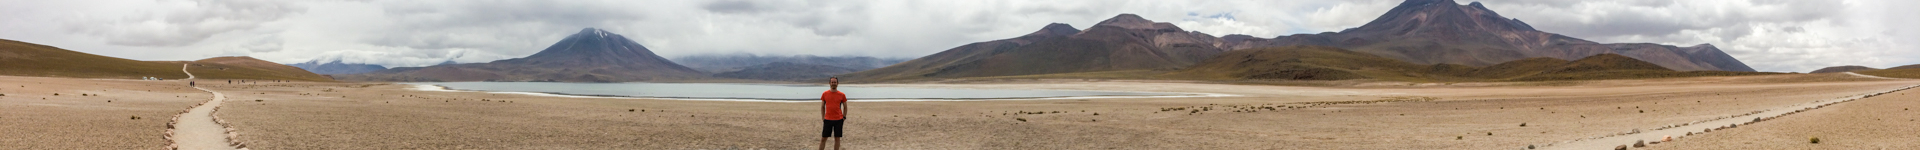 Lagunas Altiplanicas - San Pedro de Atacama, Chile